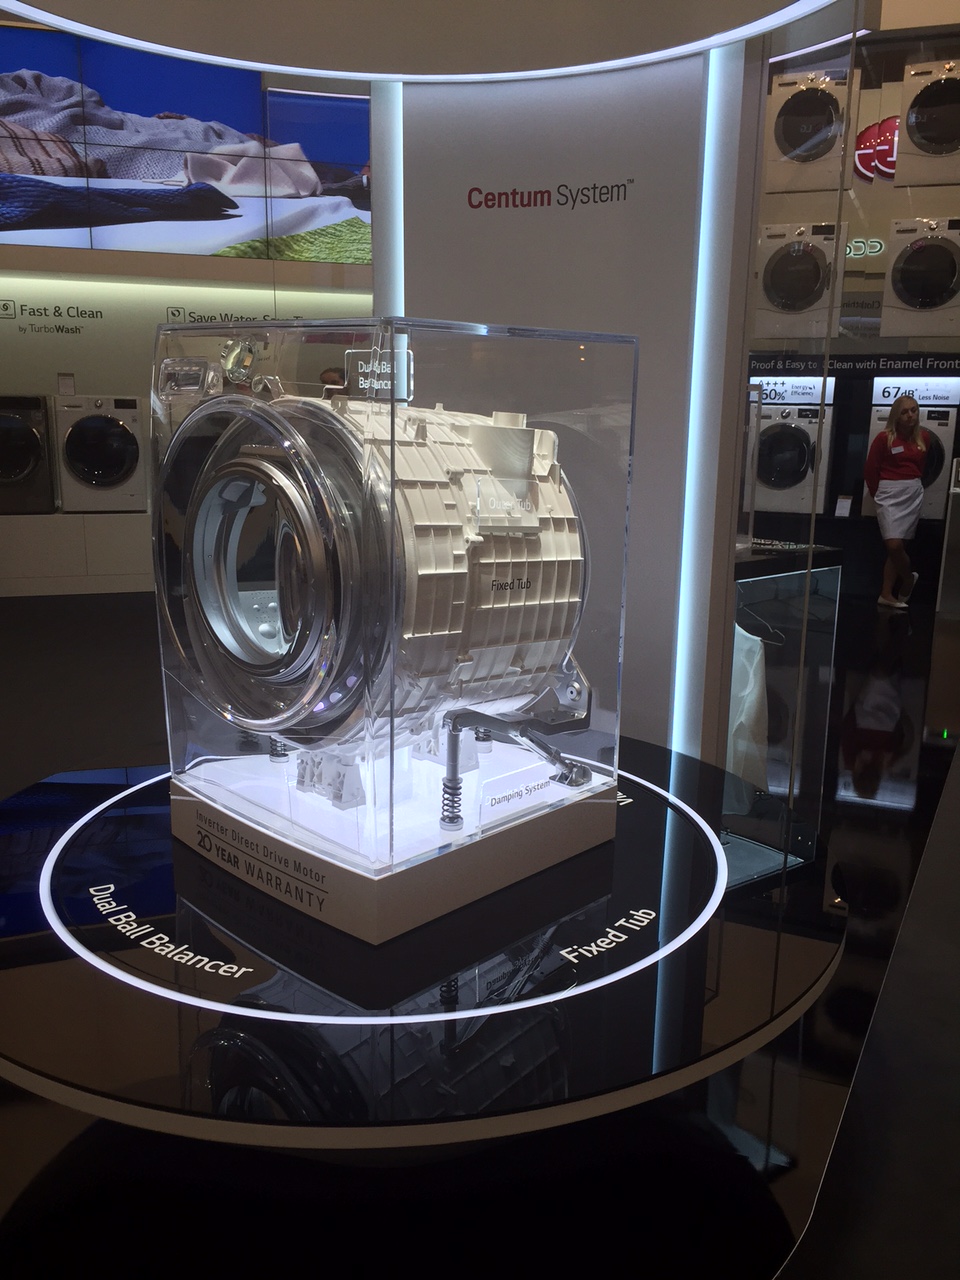 Η LG παρουσιάζει την τεχνολογία Centum System για απορρόφηση κραδασμών και θορύβου & διπλασιάζει την εγγύηση στα 20 χρόνια!